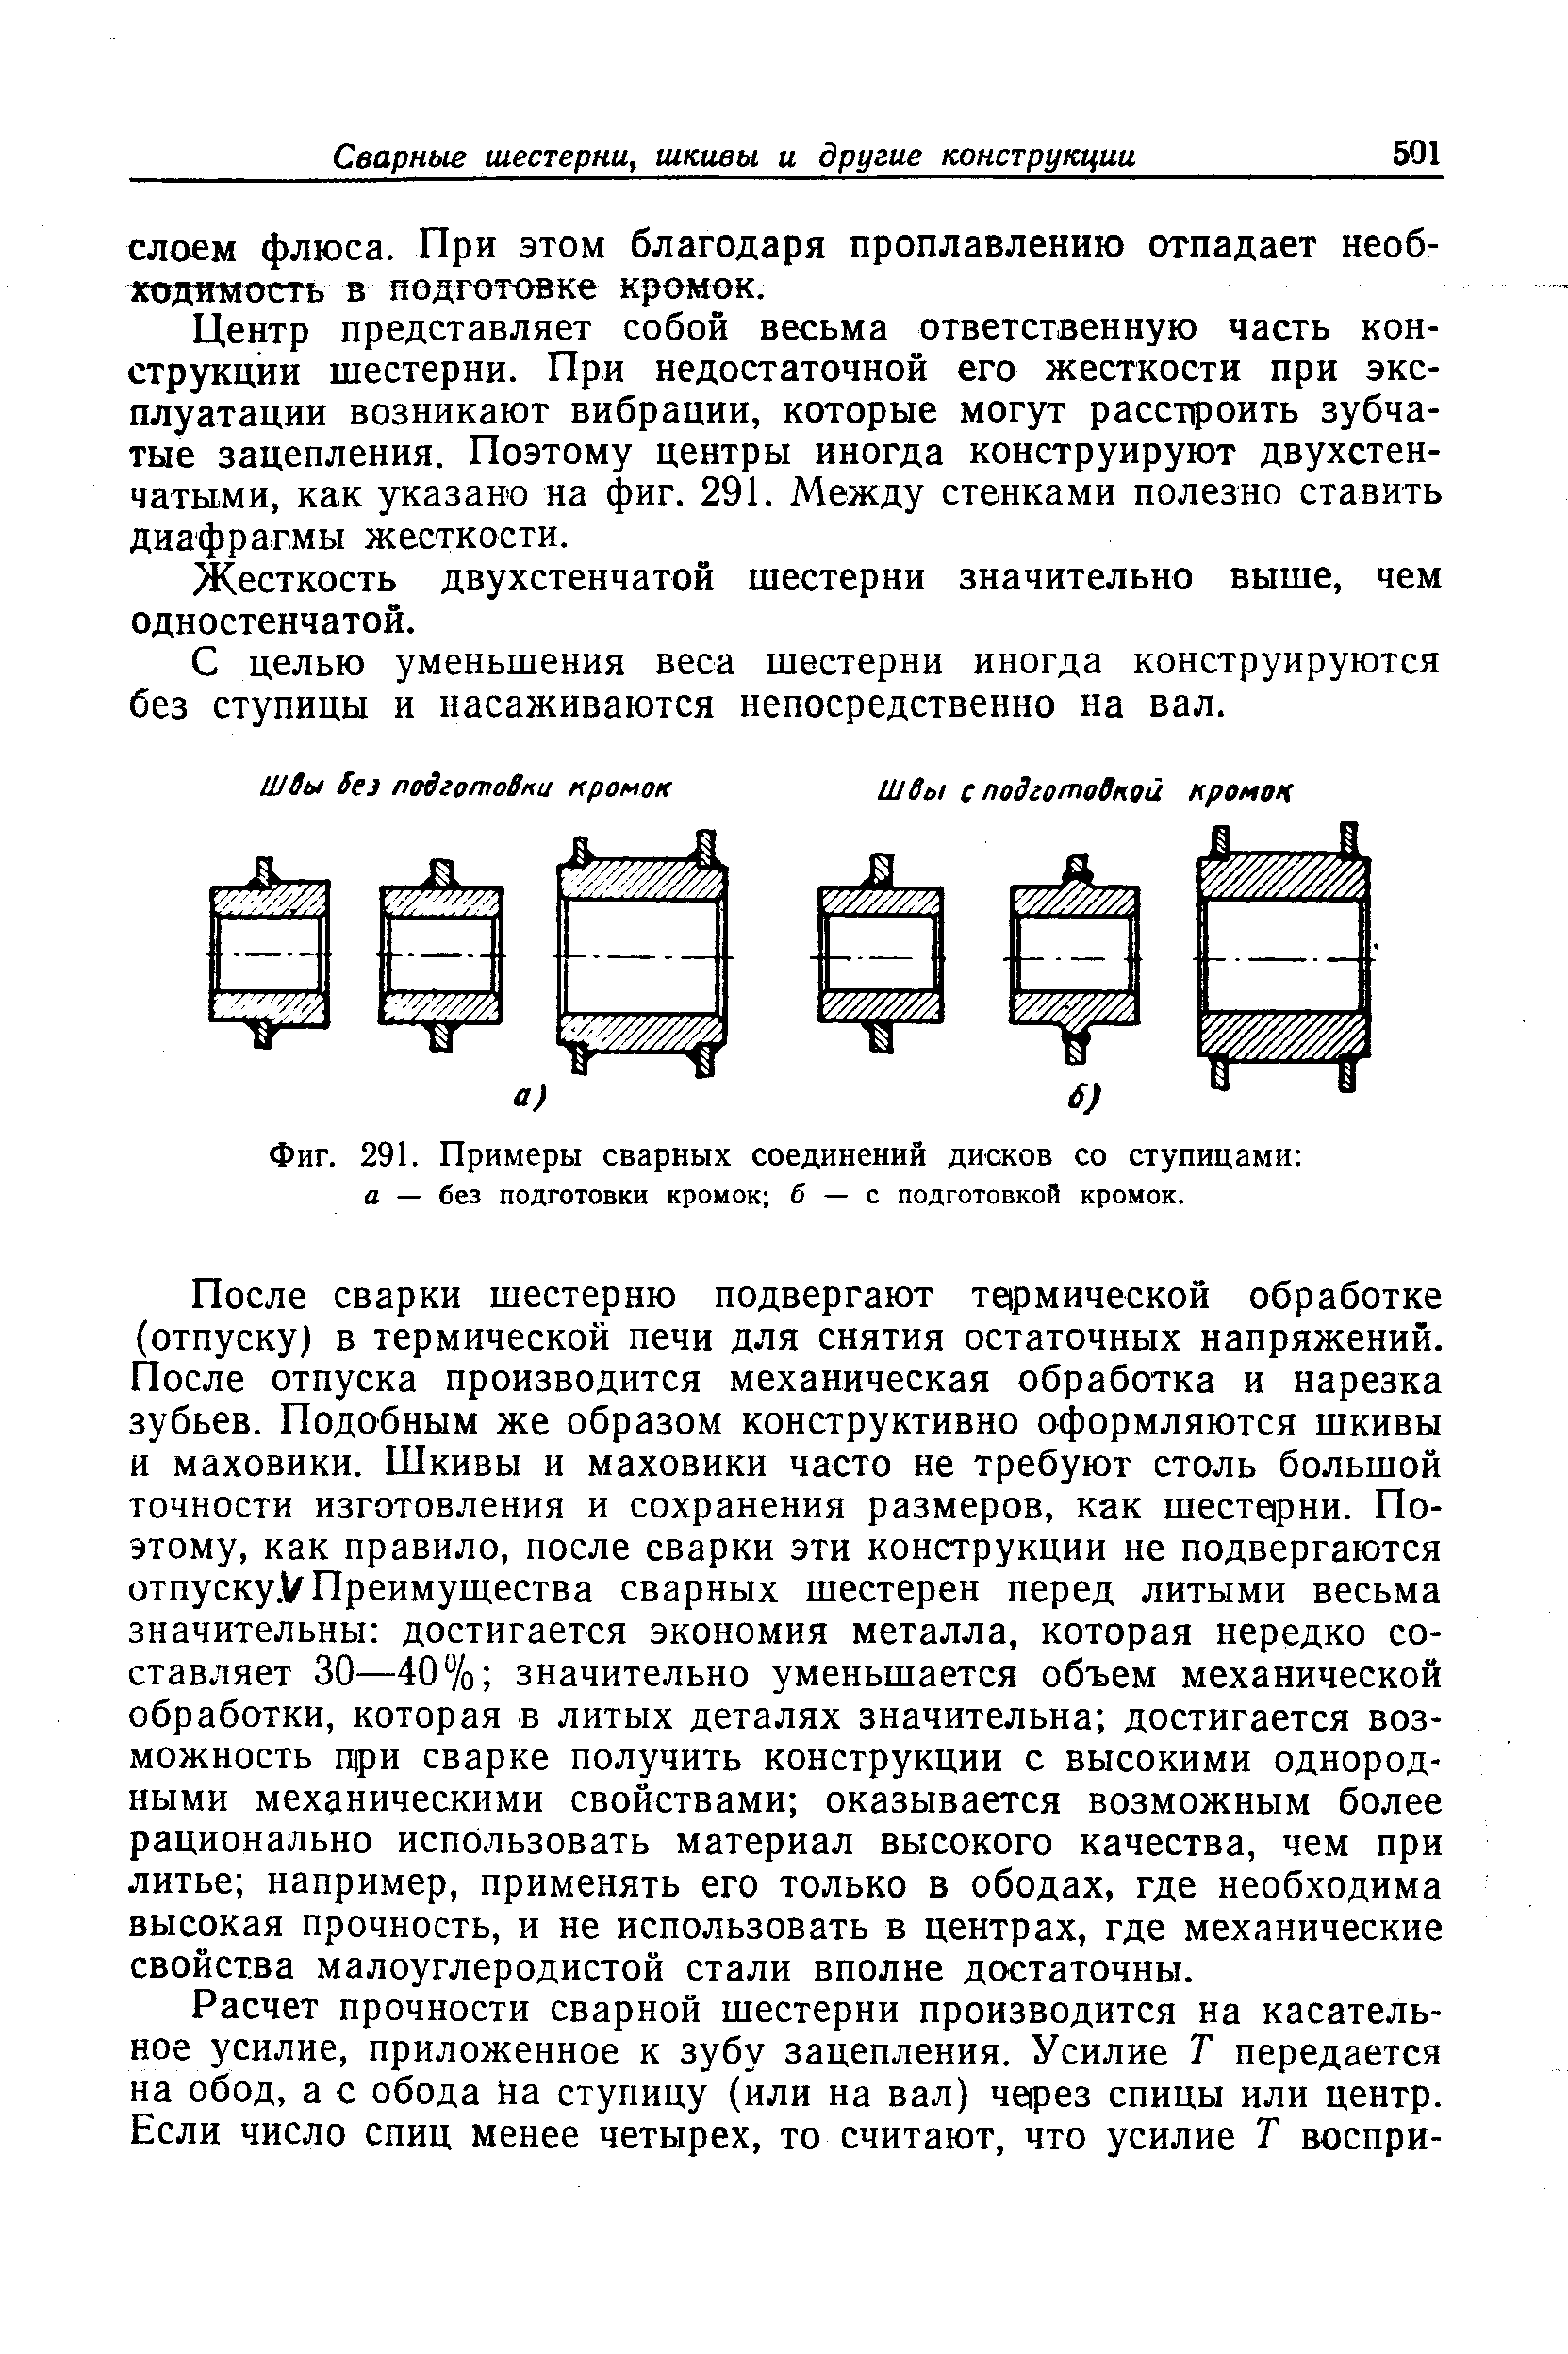 Фиг. 291. Примеры сварных соединений дисков со ступицами 
